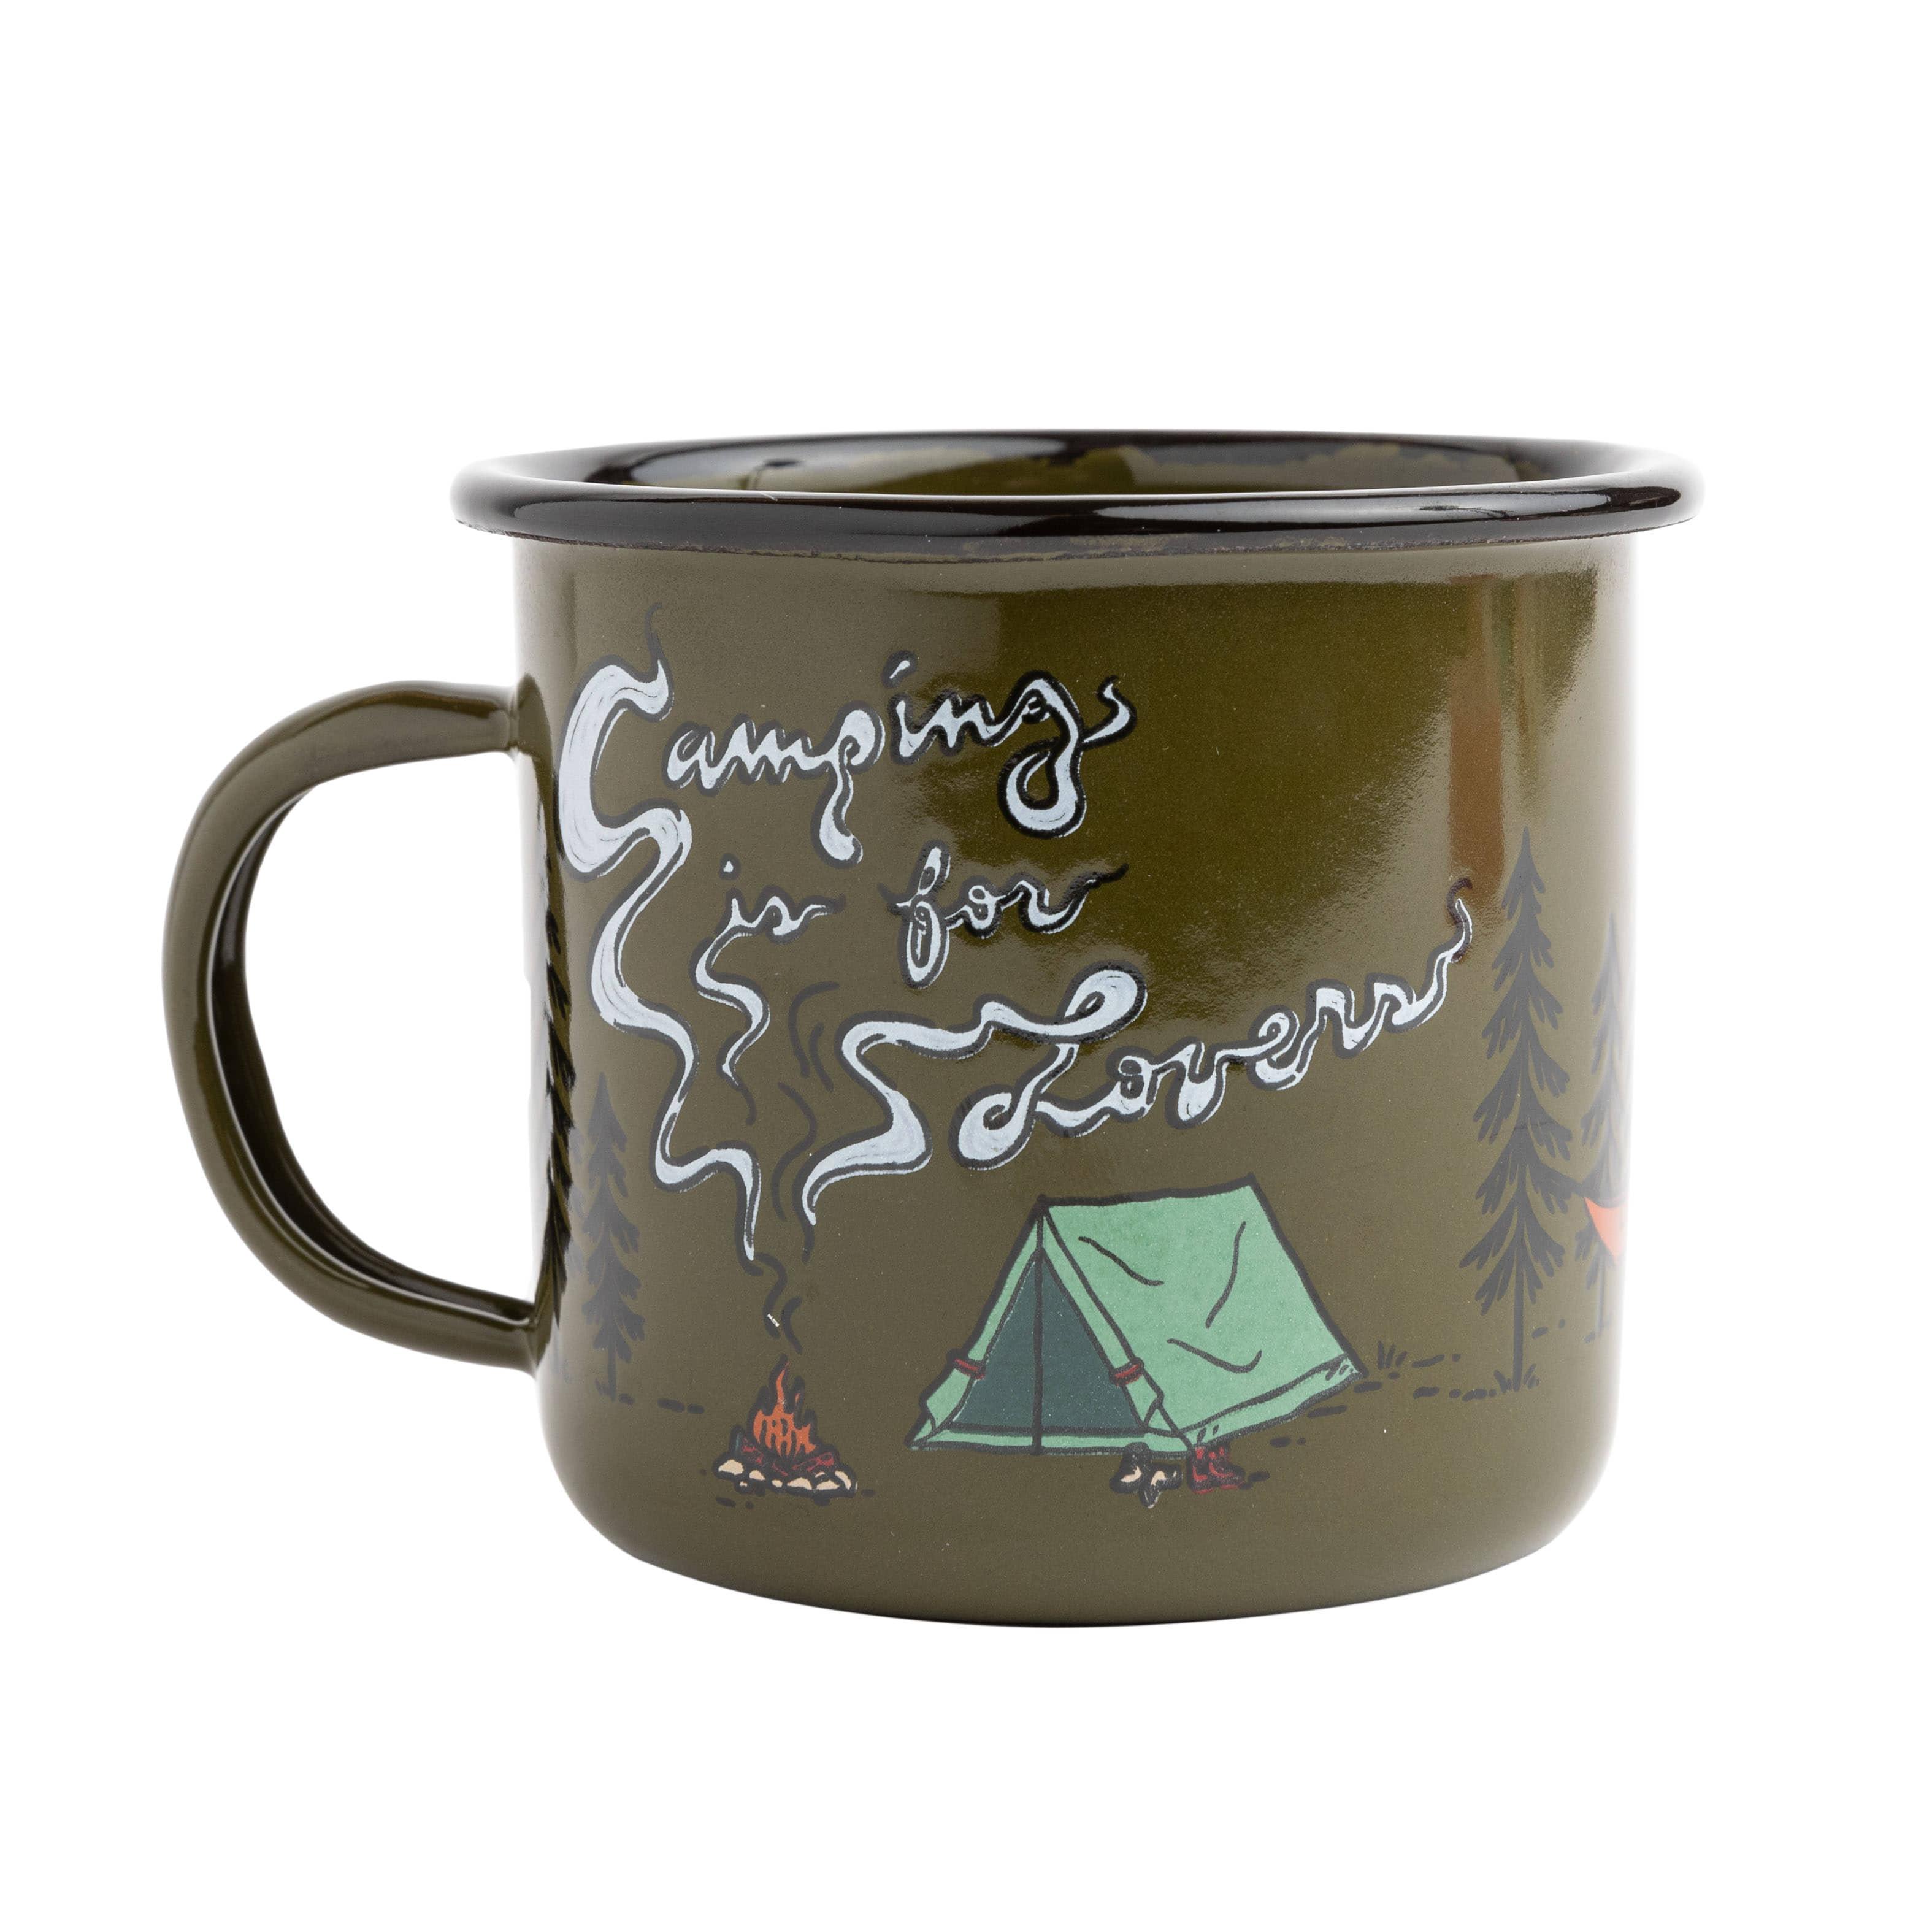 http://www.treklightgear.com/cdn/shop/files/camping-is-for-lovers-enamel-mug-trek-light-gear.jpg?v=1693944439